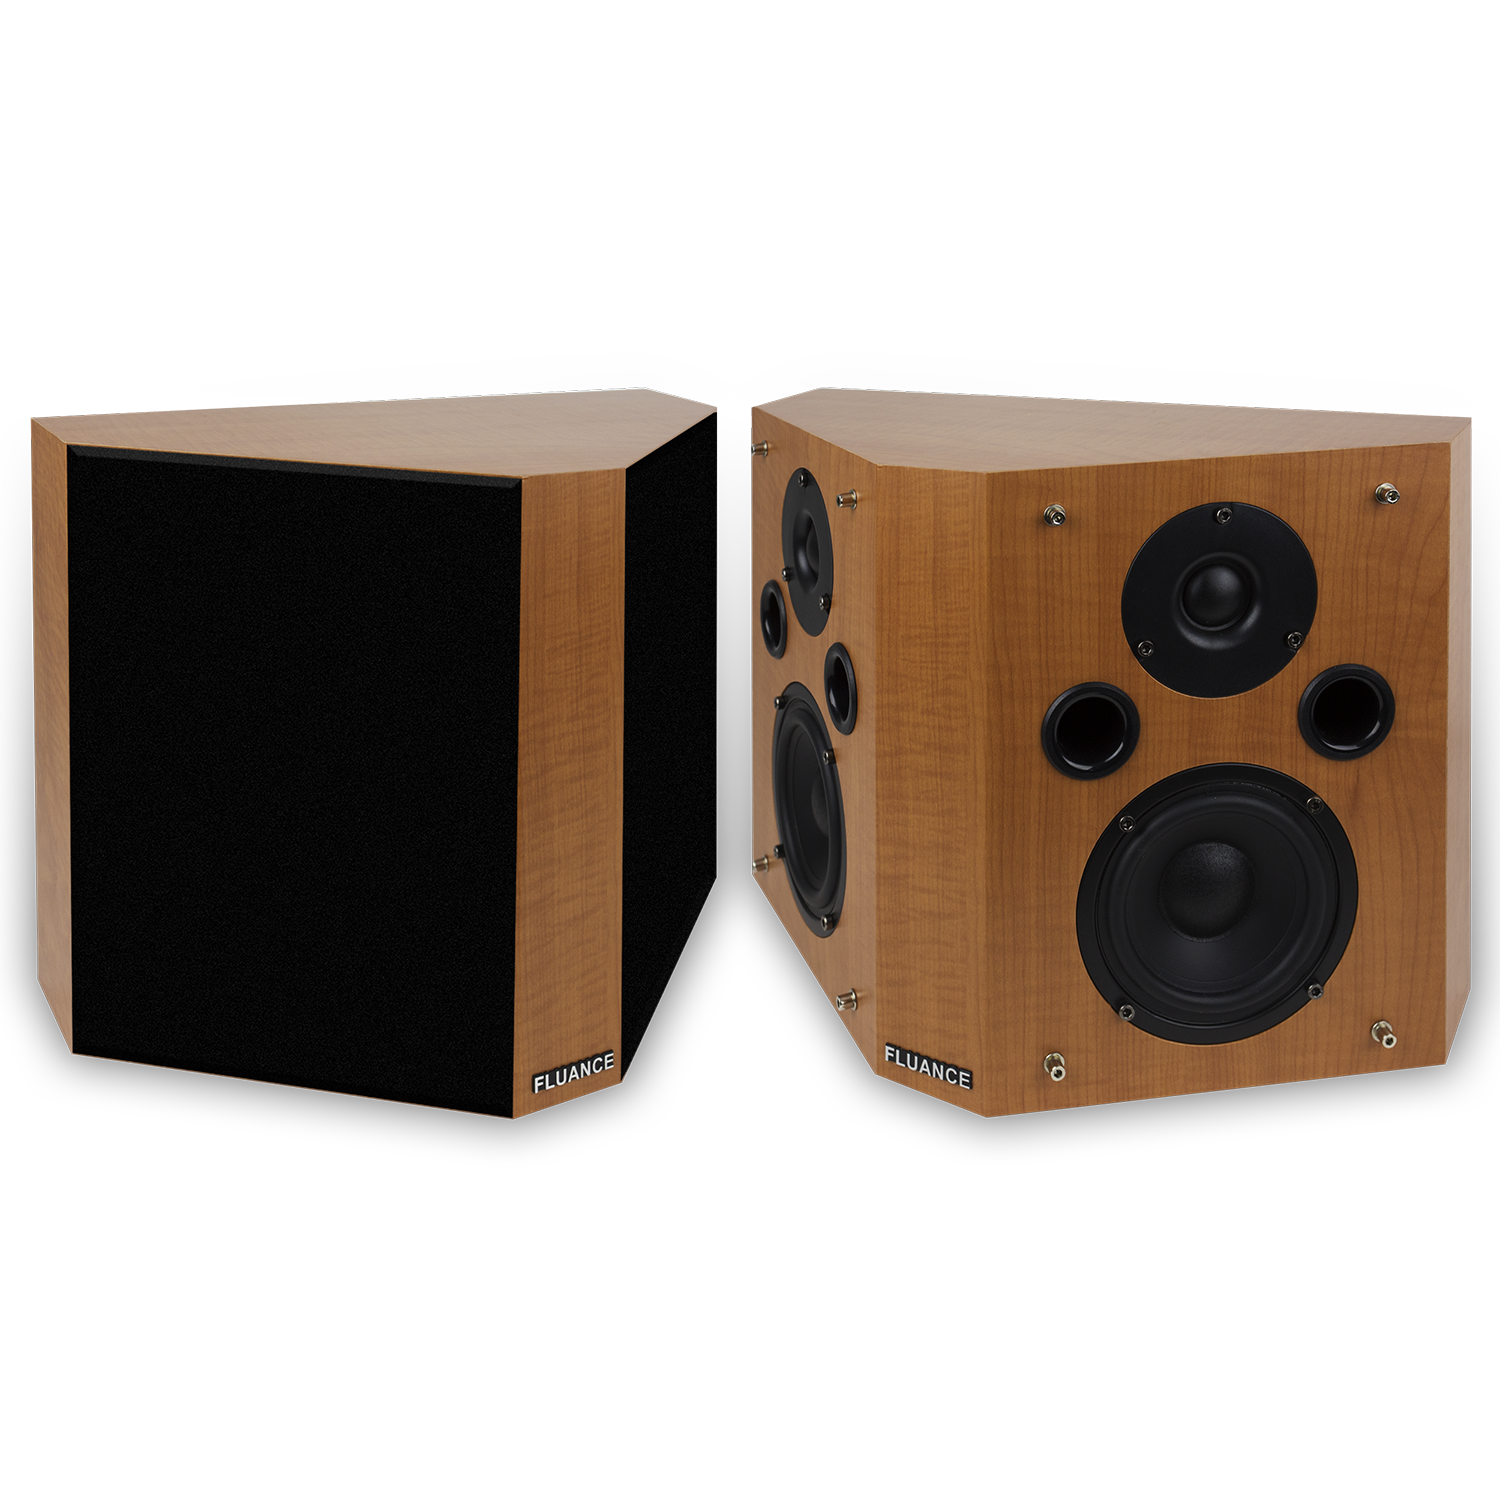 SXBP High Definition Bipolar Surround Sound Speakers